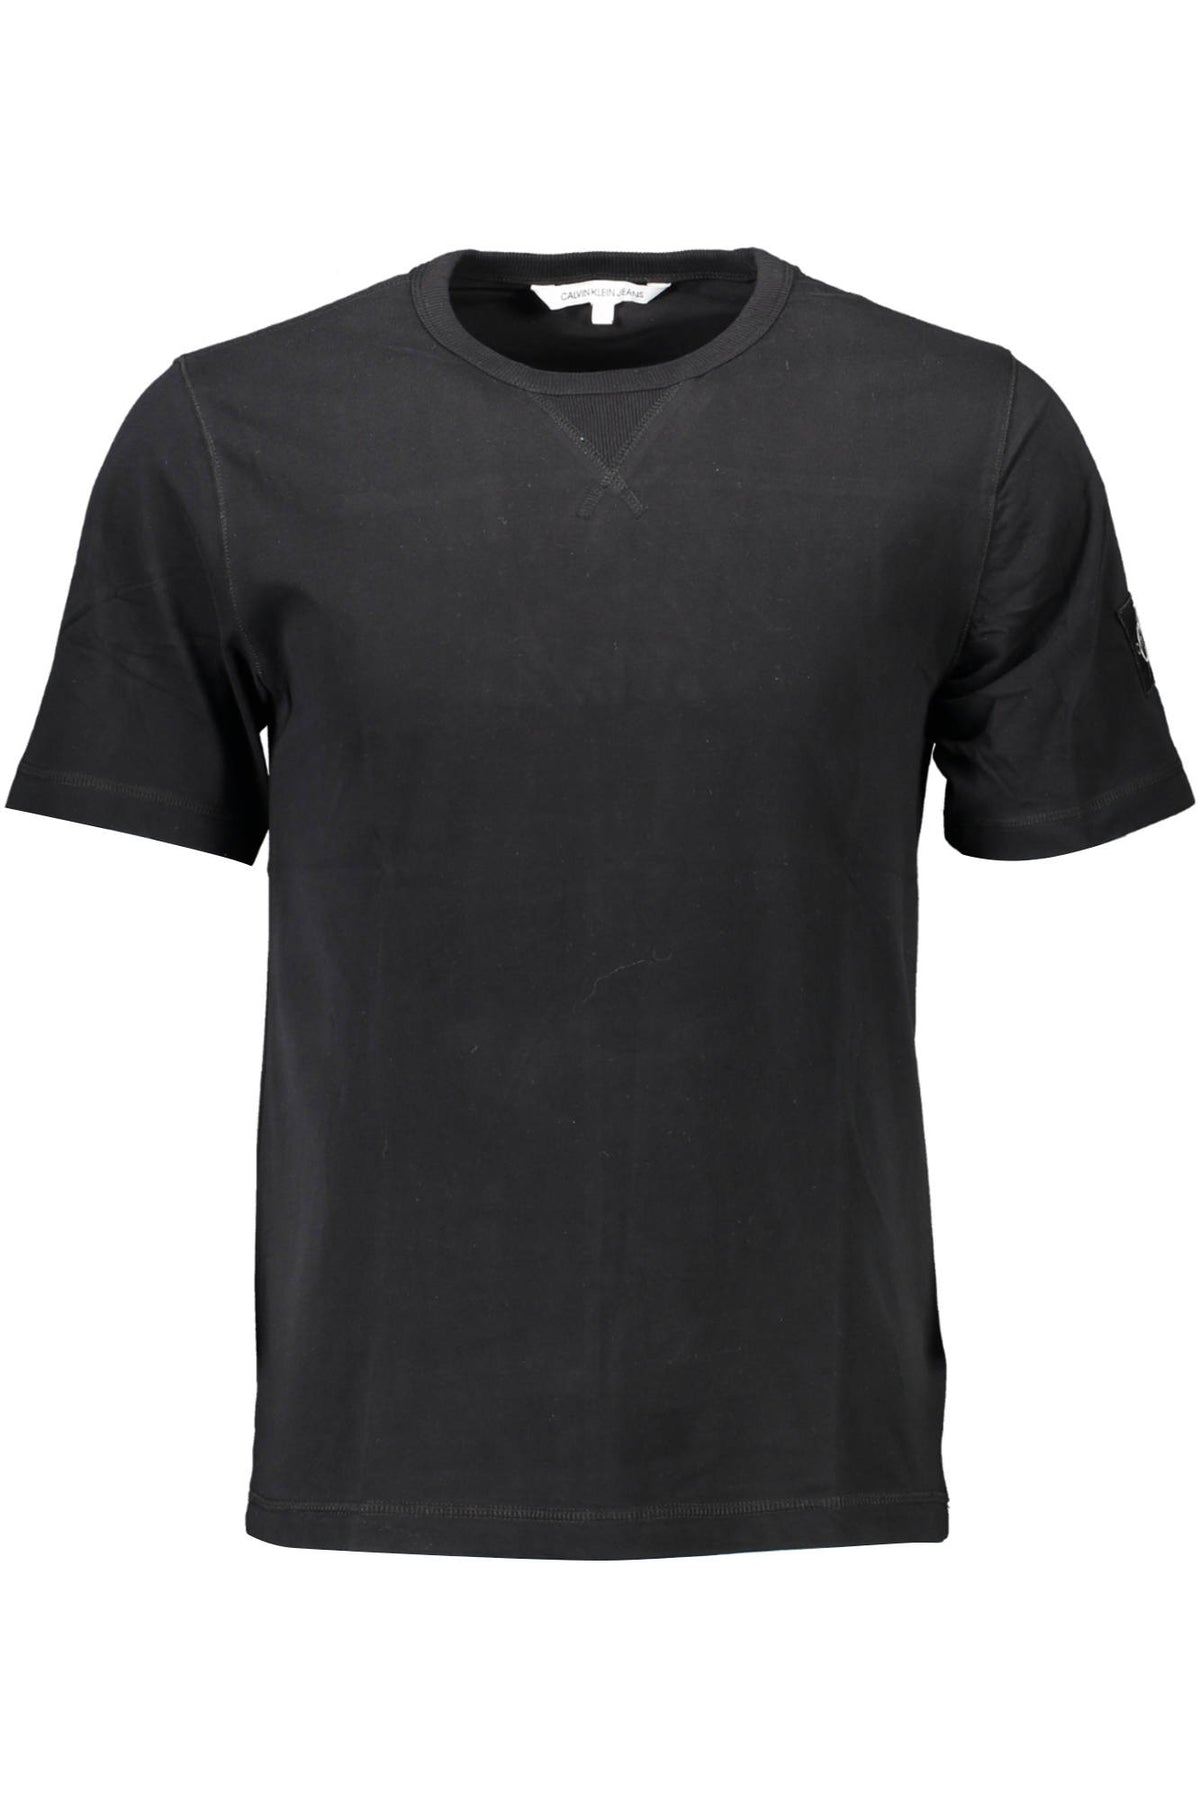 CALVIN KLEIN Herren T-Shirt Shirt Sweatshirt Oberteil mit Rundhalsausschnitt, kurzärmlig